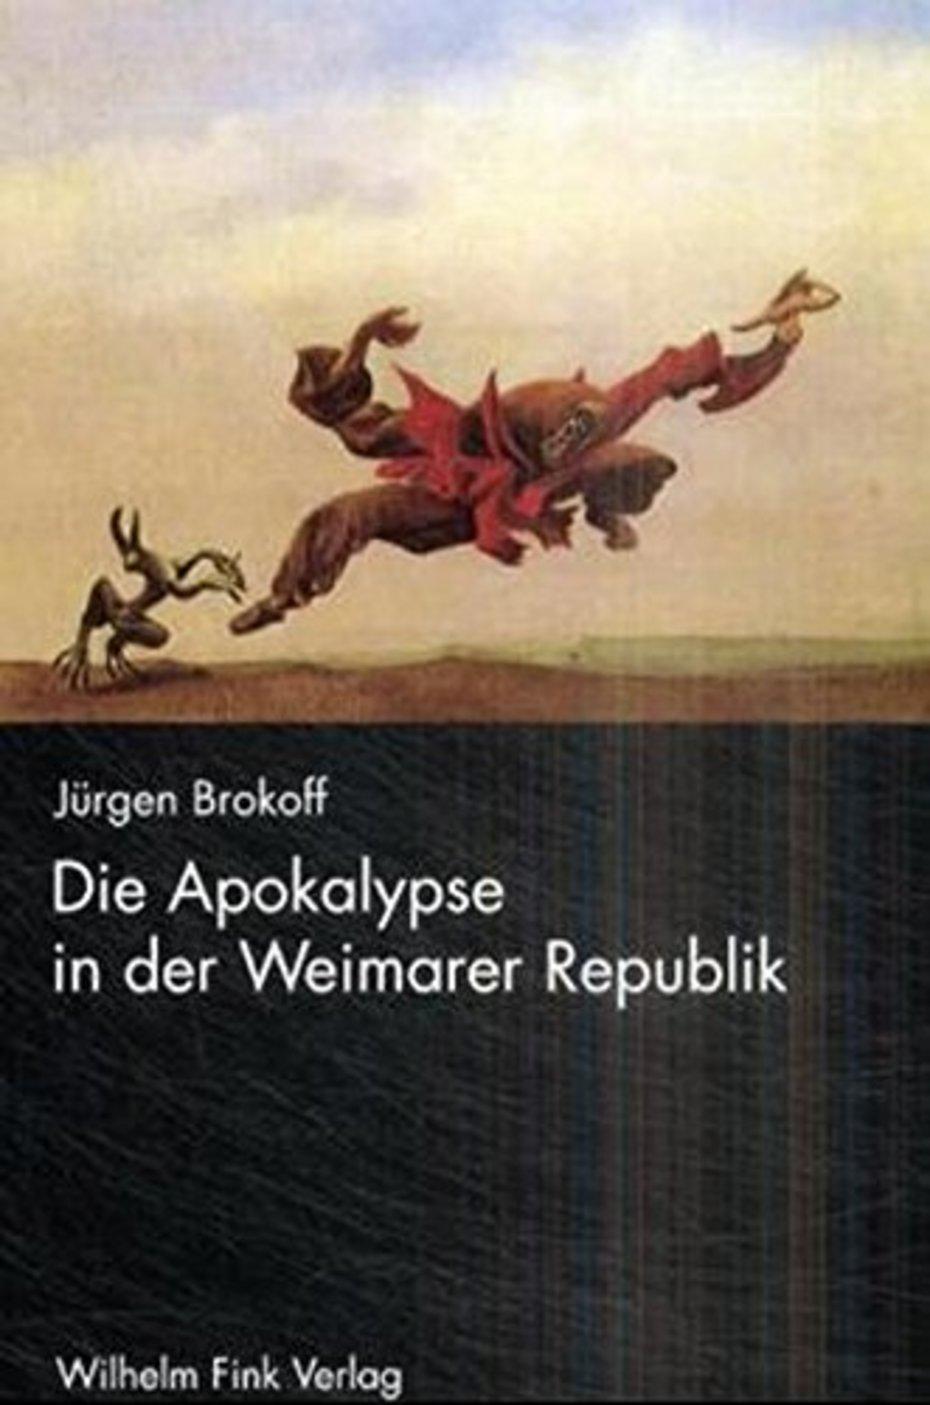 Die Apokalypse in der Weimarer Republik (Cover)